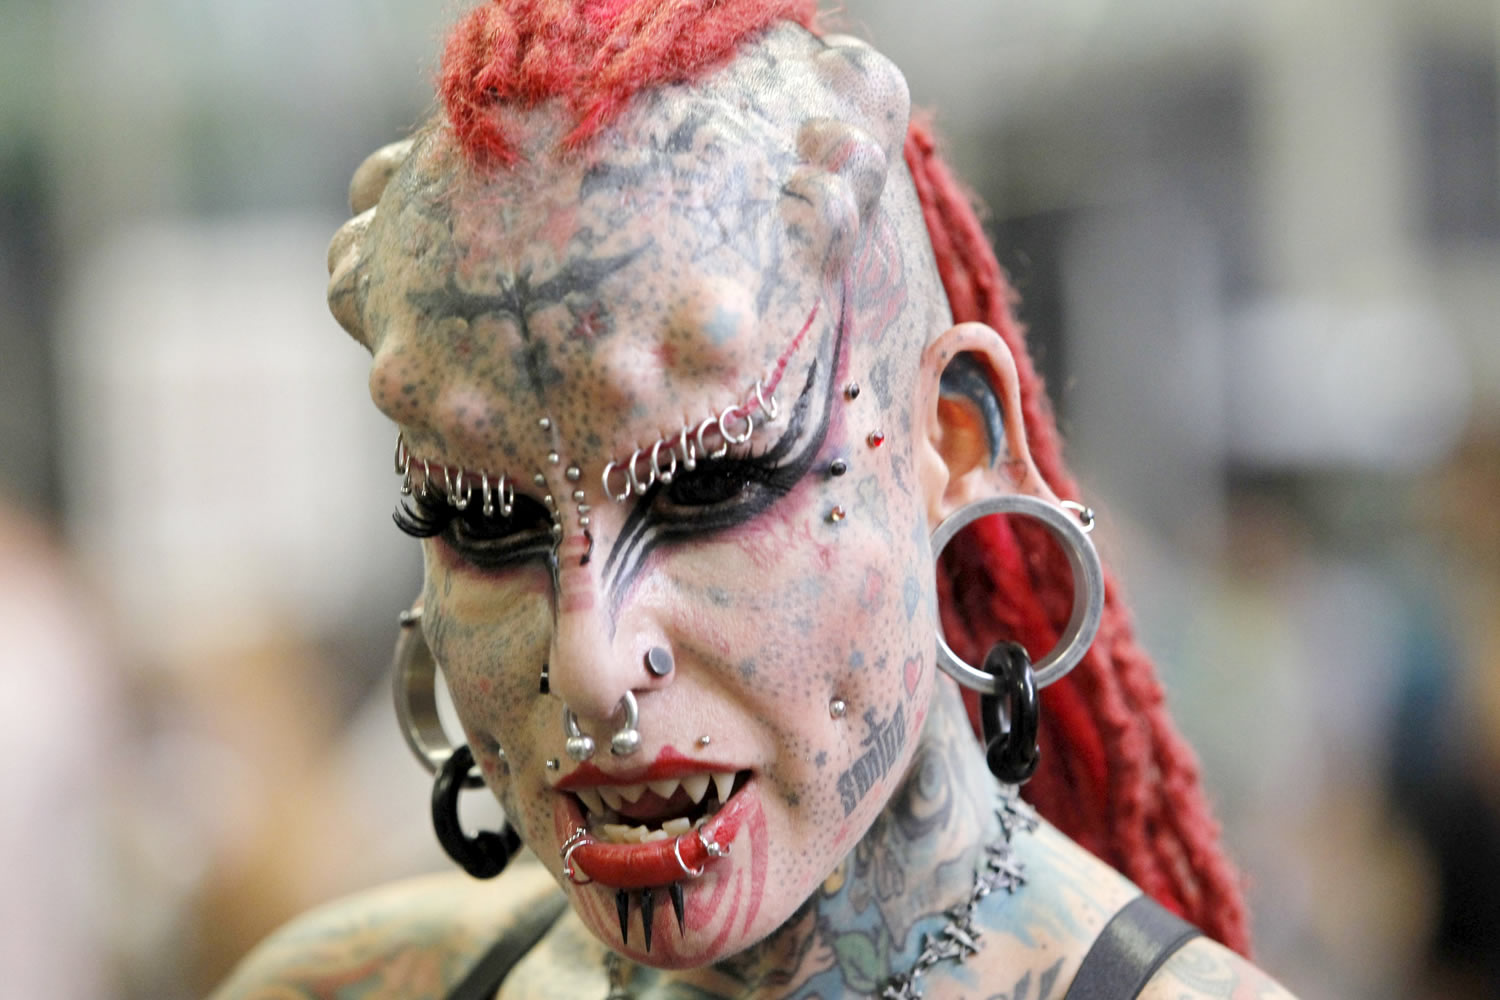 La mujer vampiro: 96% del cuerpo tatuado, 45% implantes, y una dura historia de malos tratos detrás